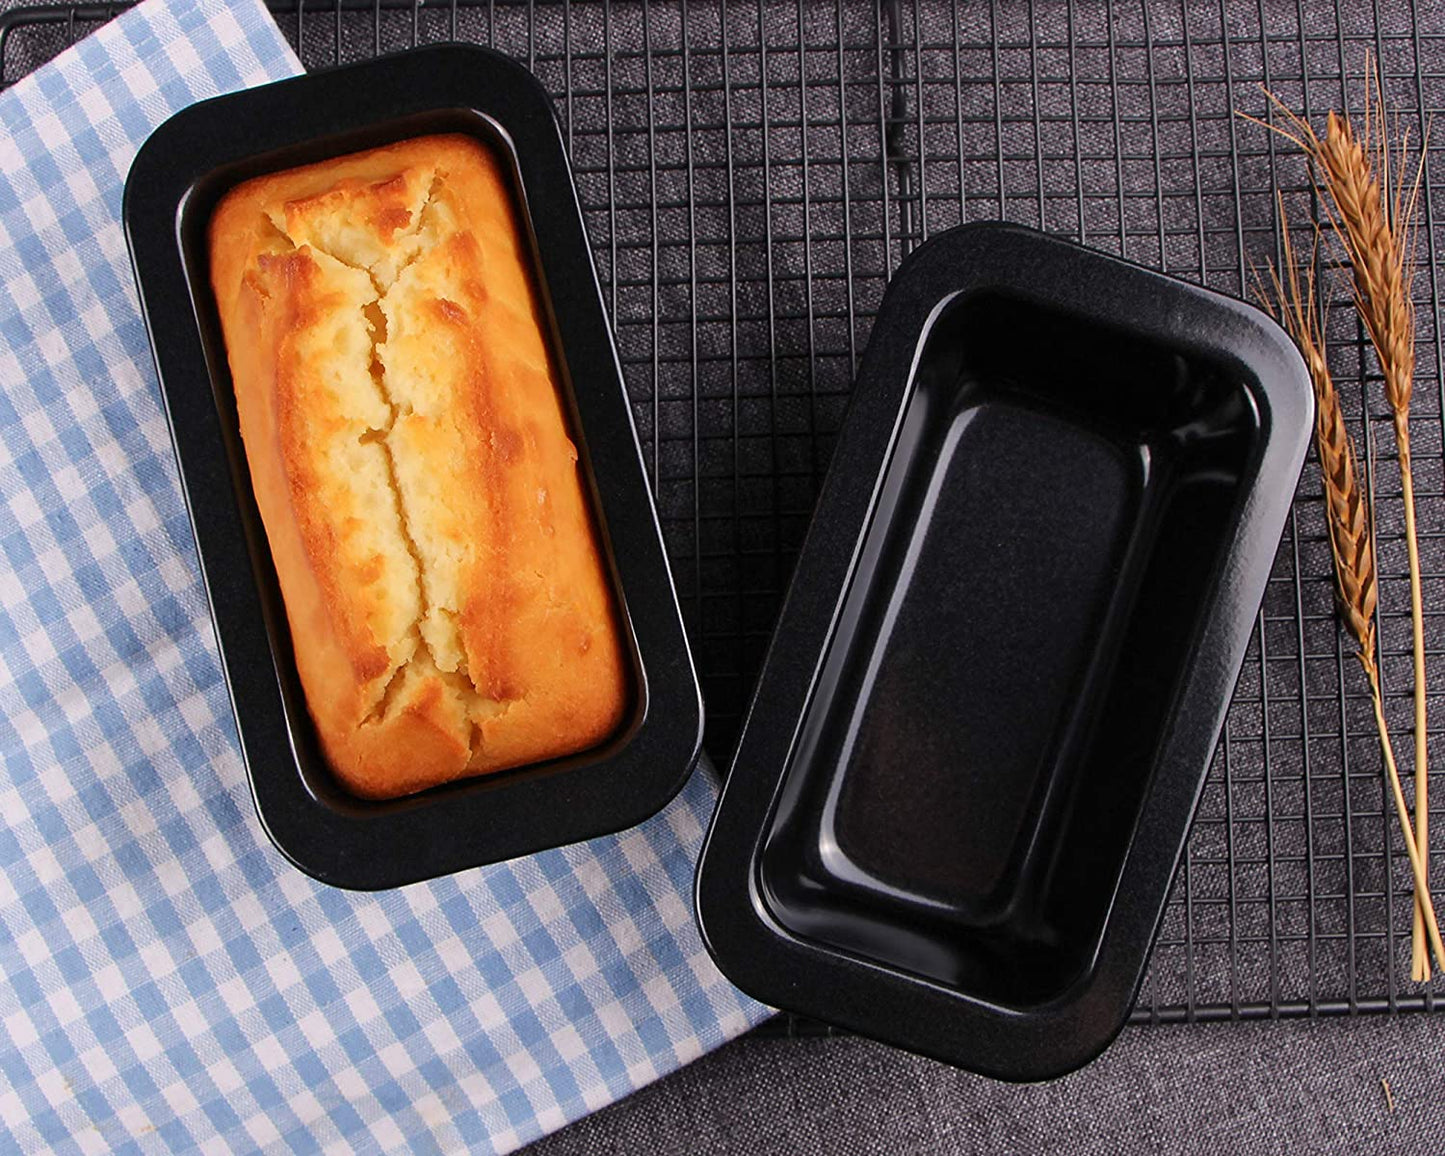 Webake 6 x 3 inch Rectangular Mini Loaf Pan (3 pcs)